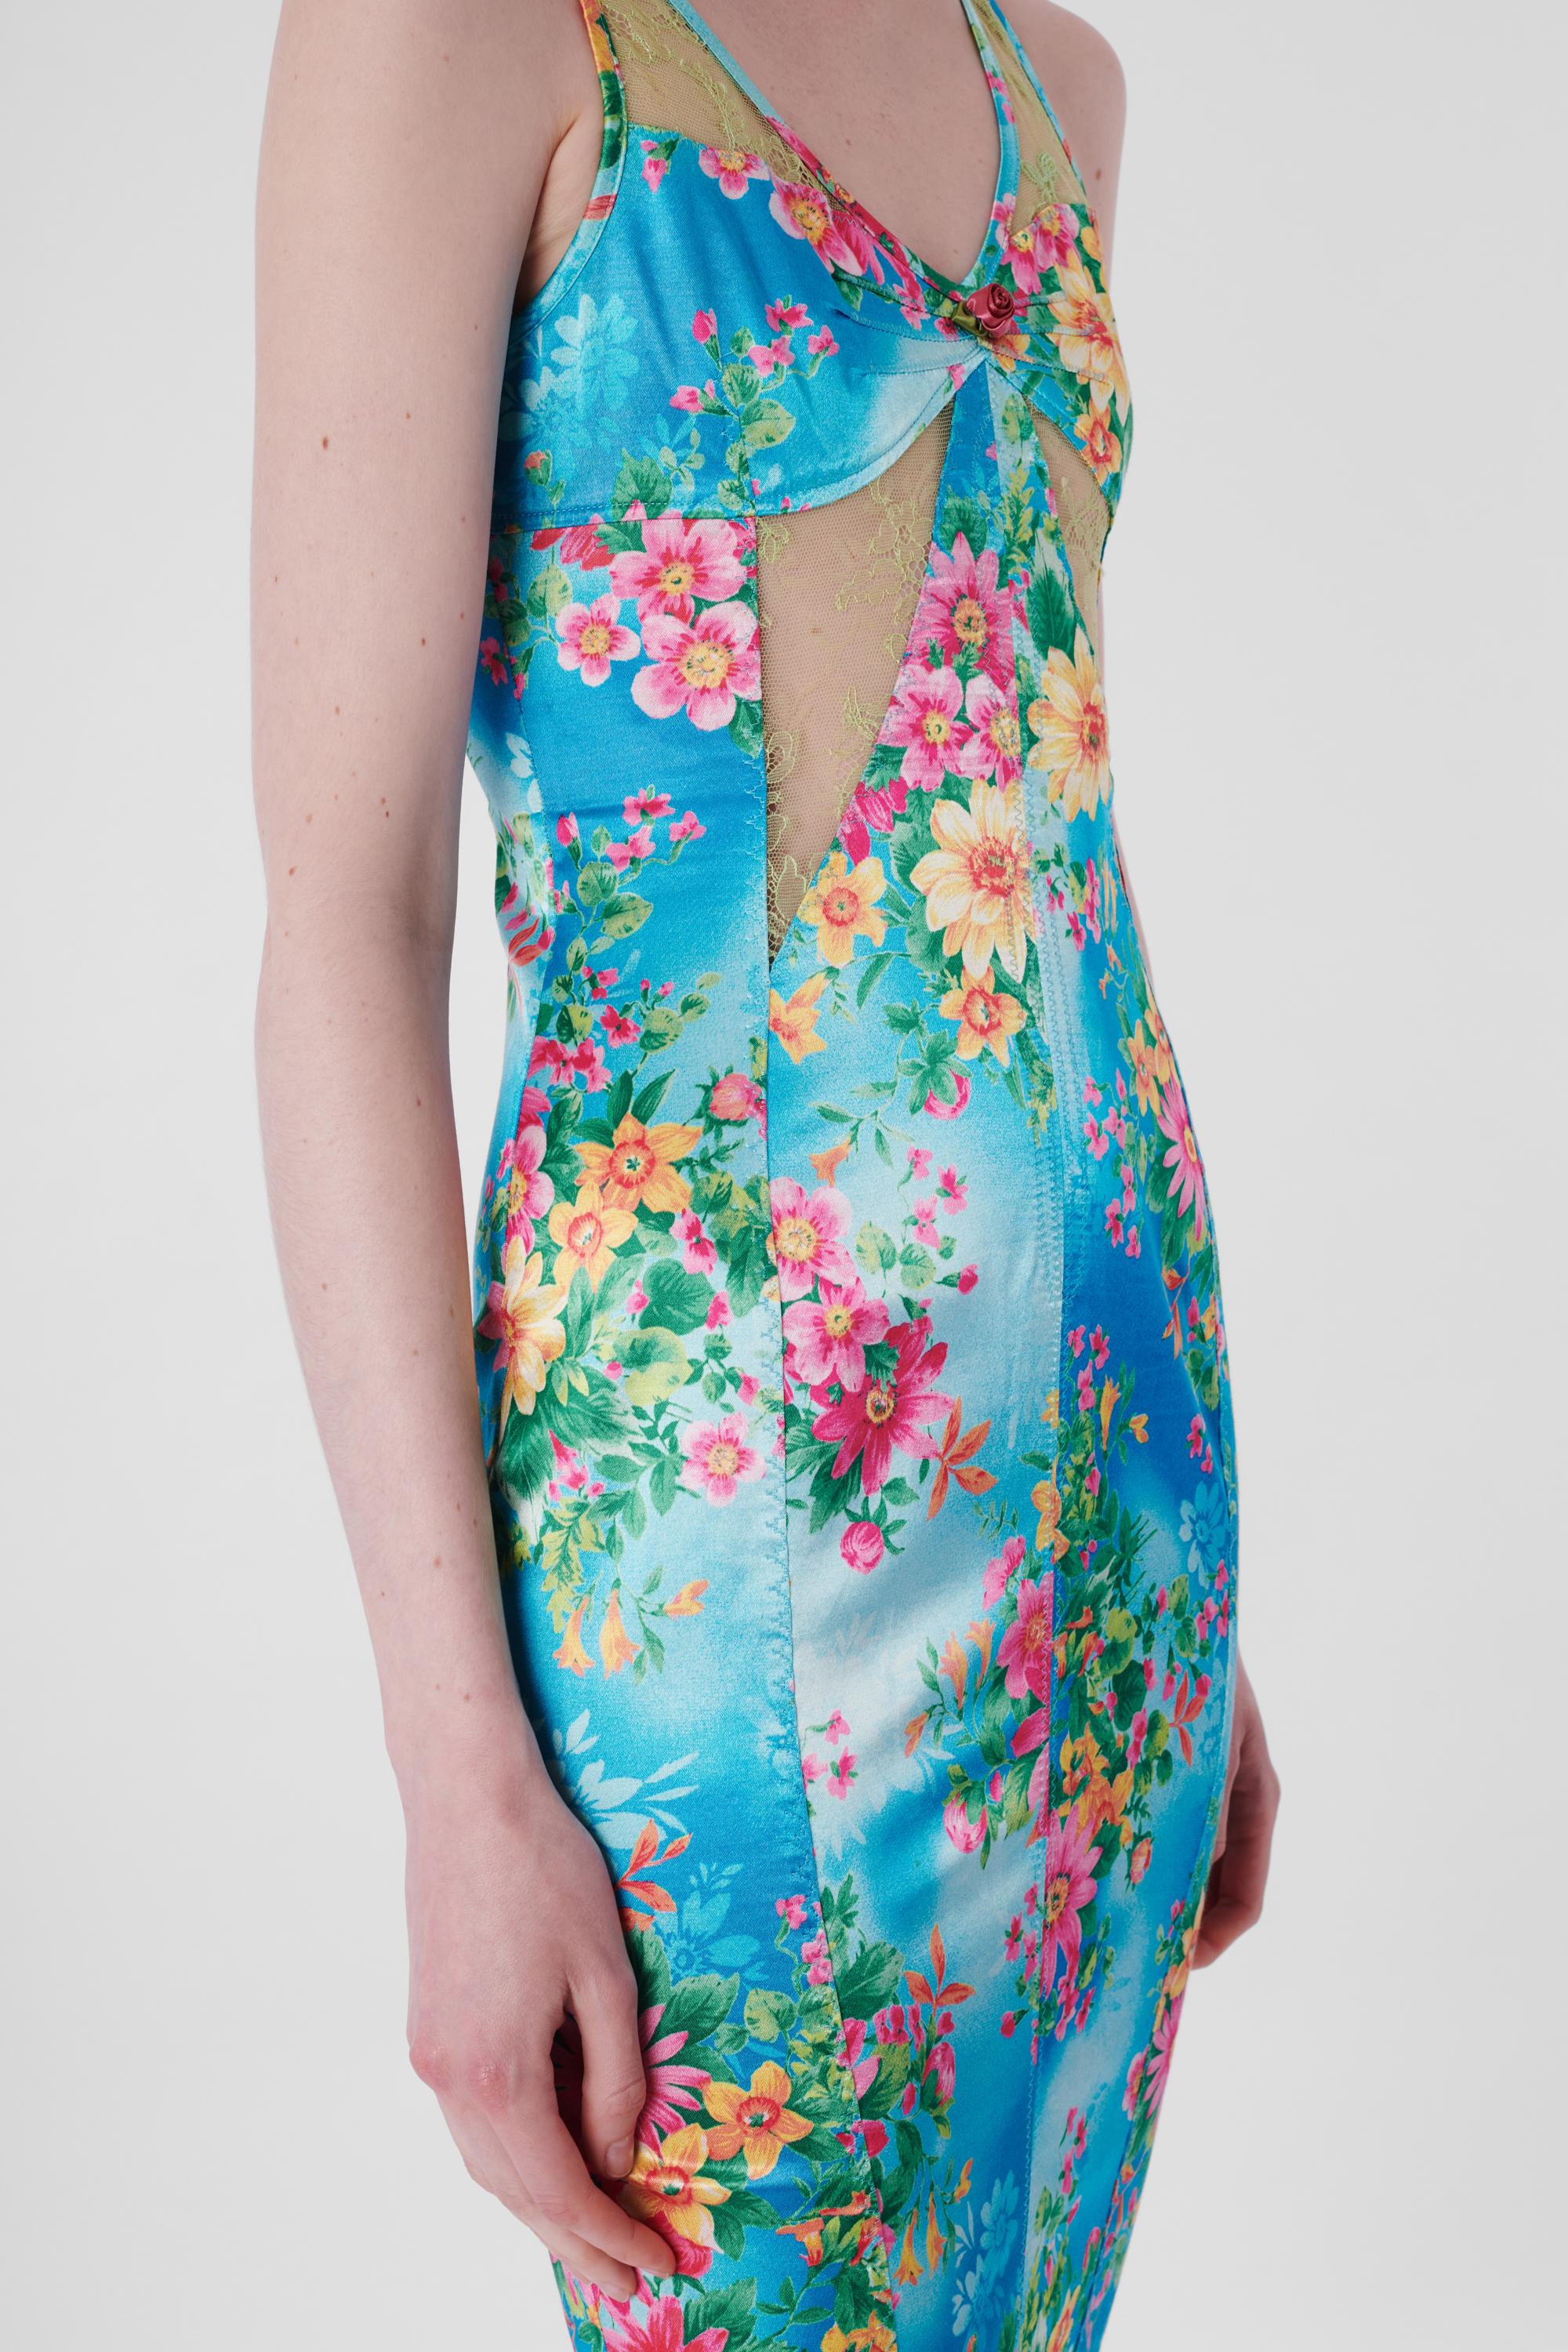 Women's or Men's Vintage Floral Lace Bodycon Dress